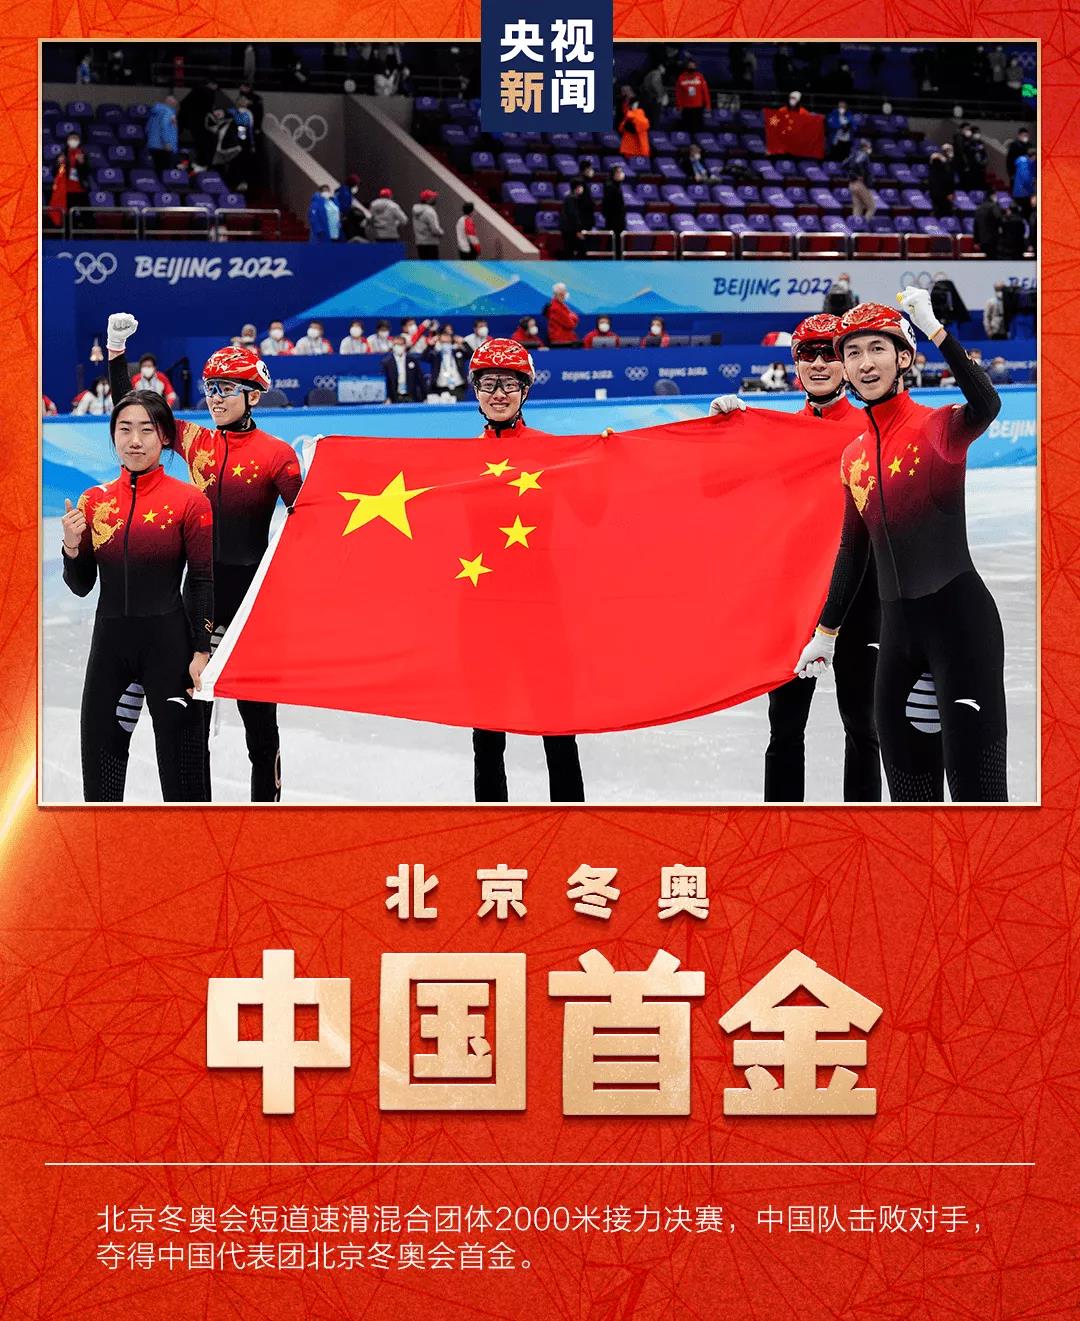 晟瑞科技助力北京冬奥国家速滑馆智能照明